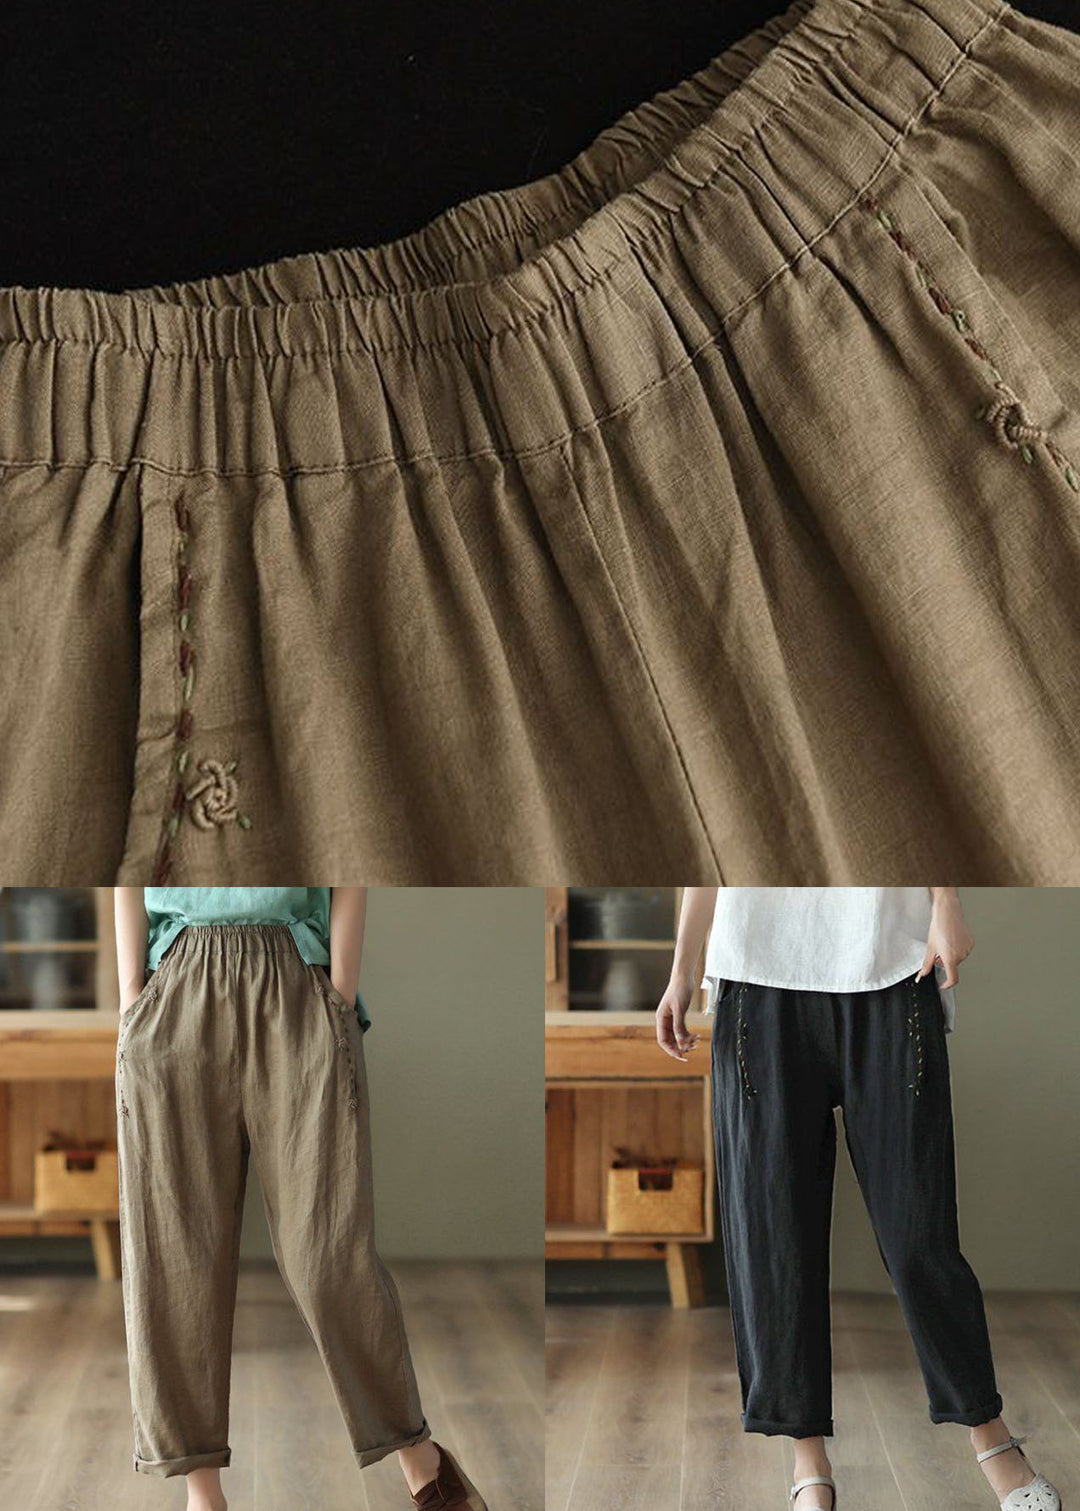 Brown Pockets High Waist Linen Pants Summer